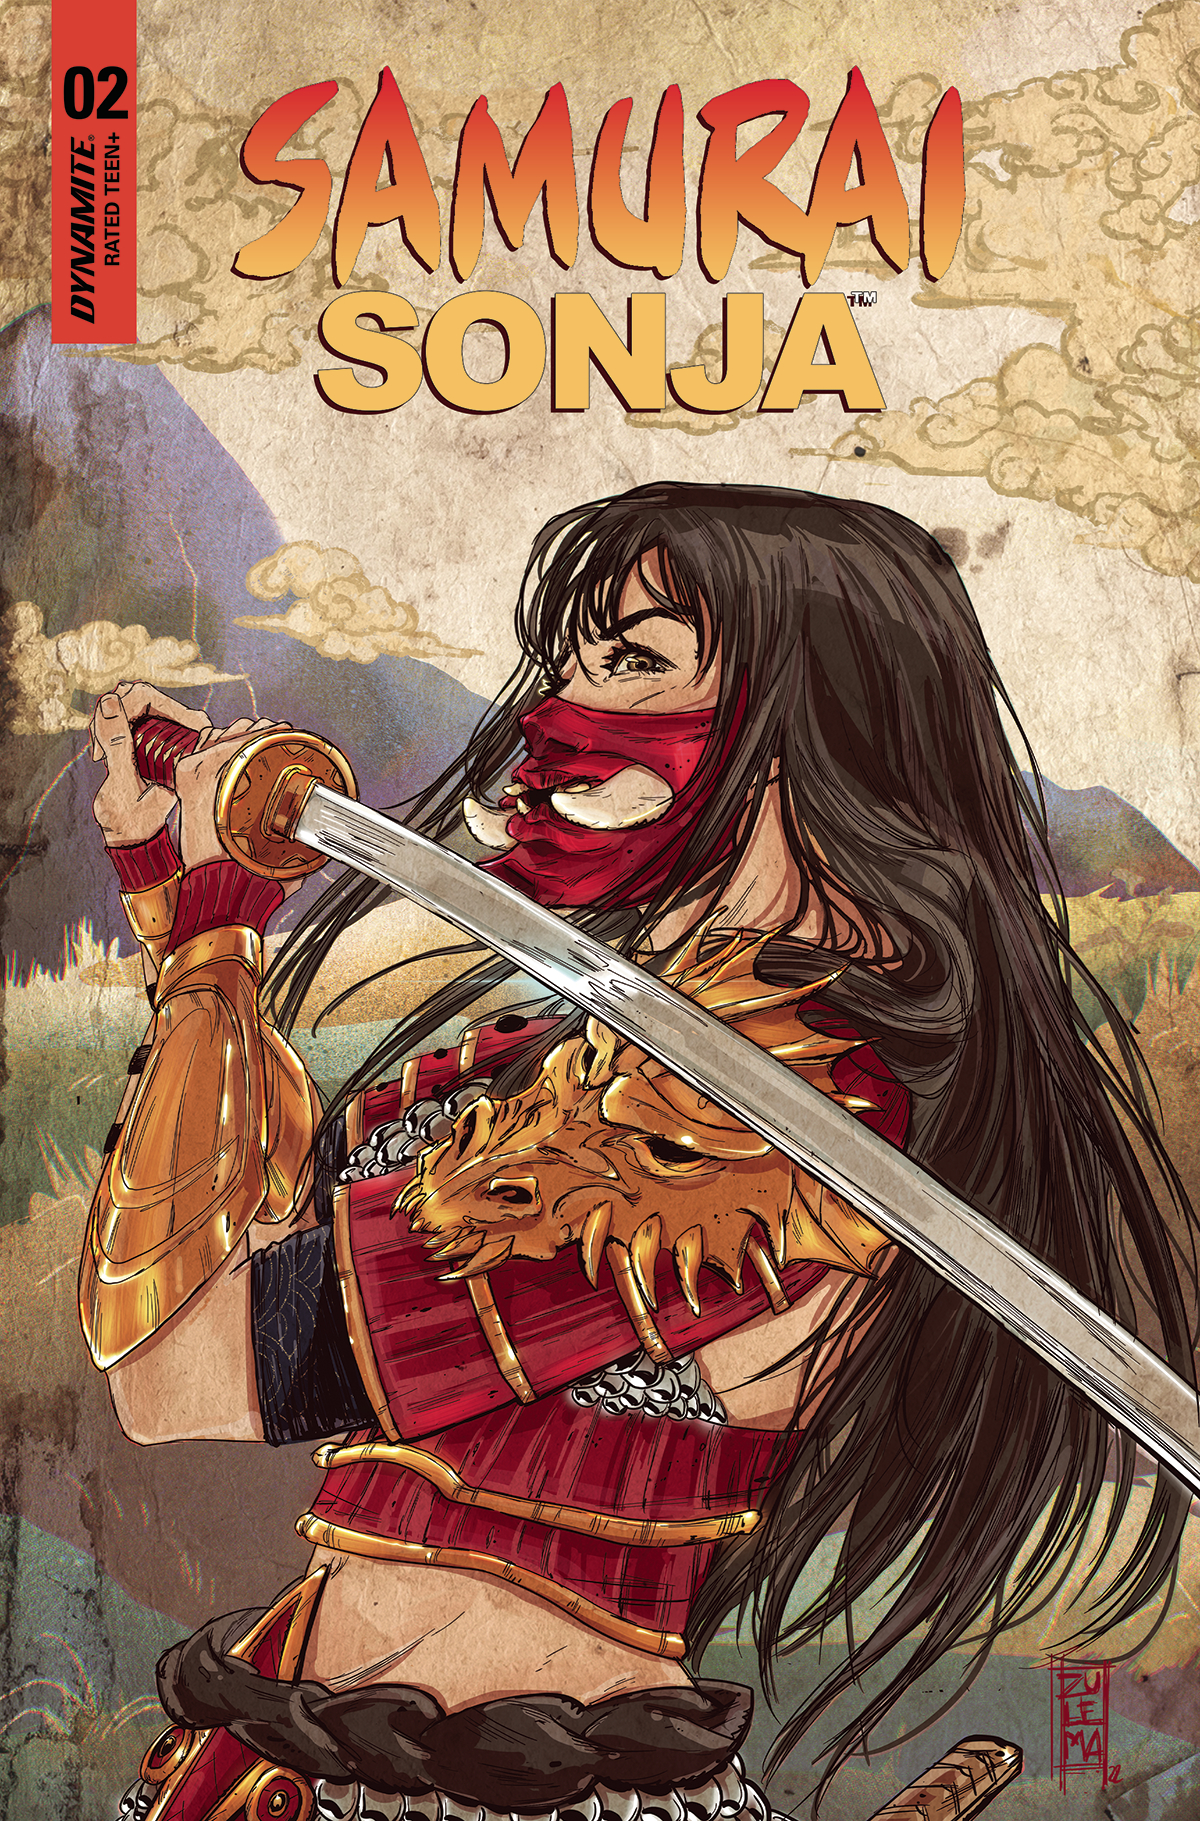 Samurai Sonja #2 Cover D Lavina